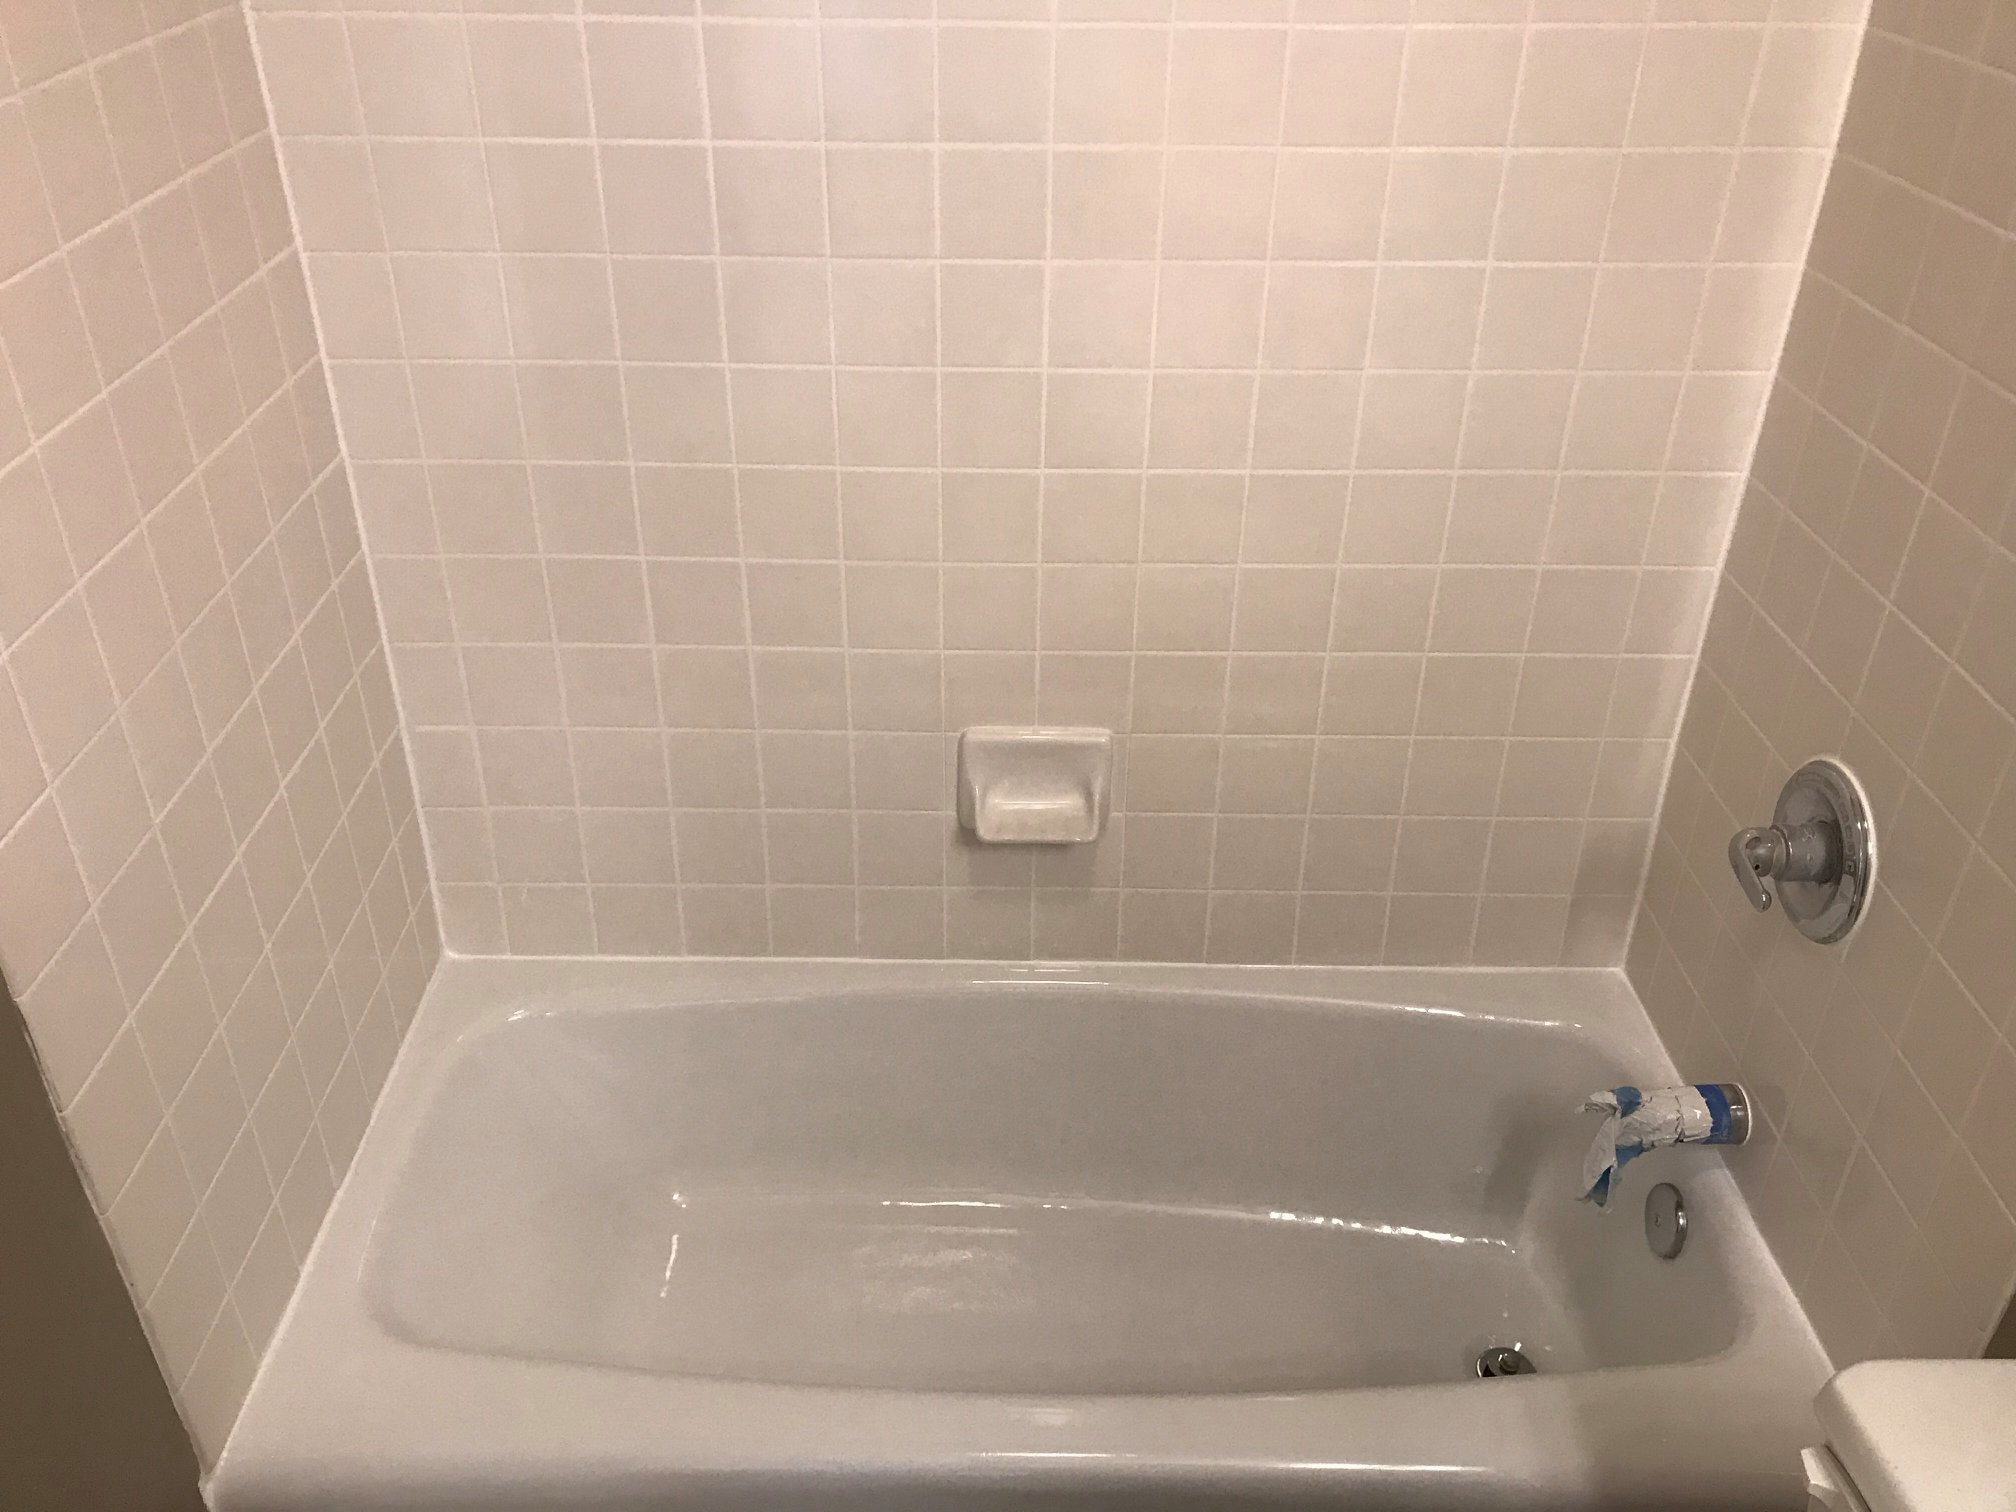 Bath Mat for Refinished or Reglazed Bath Tub